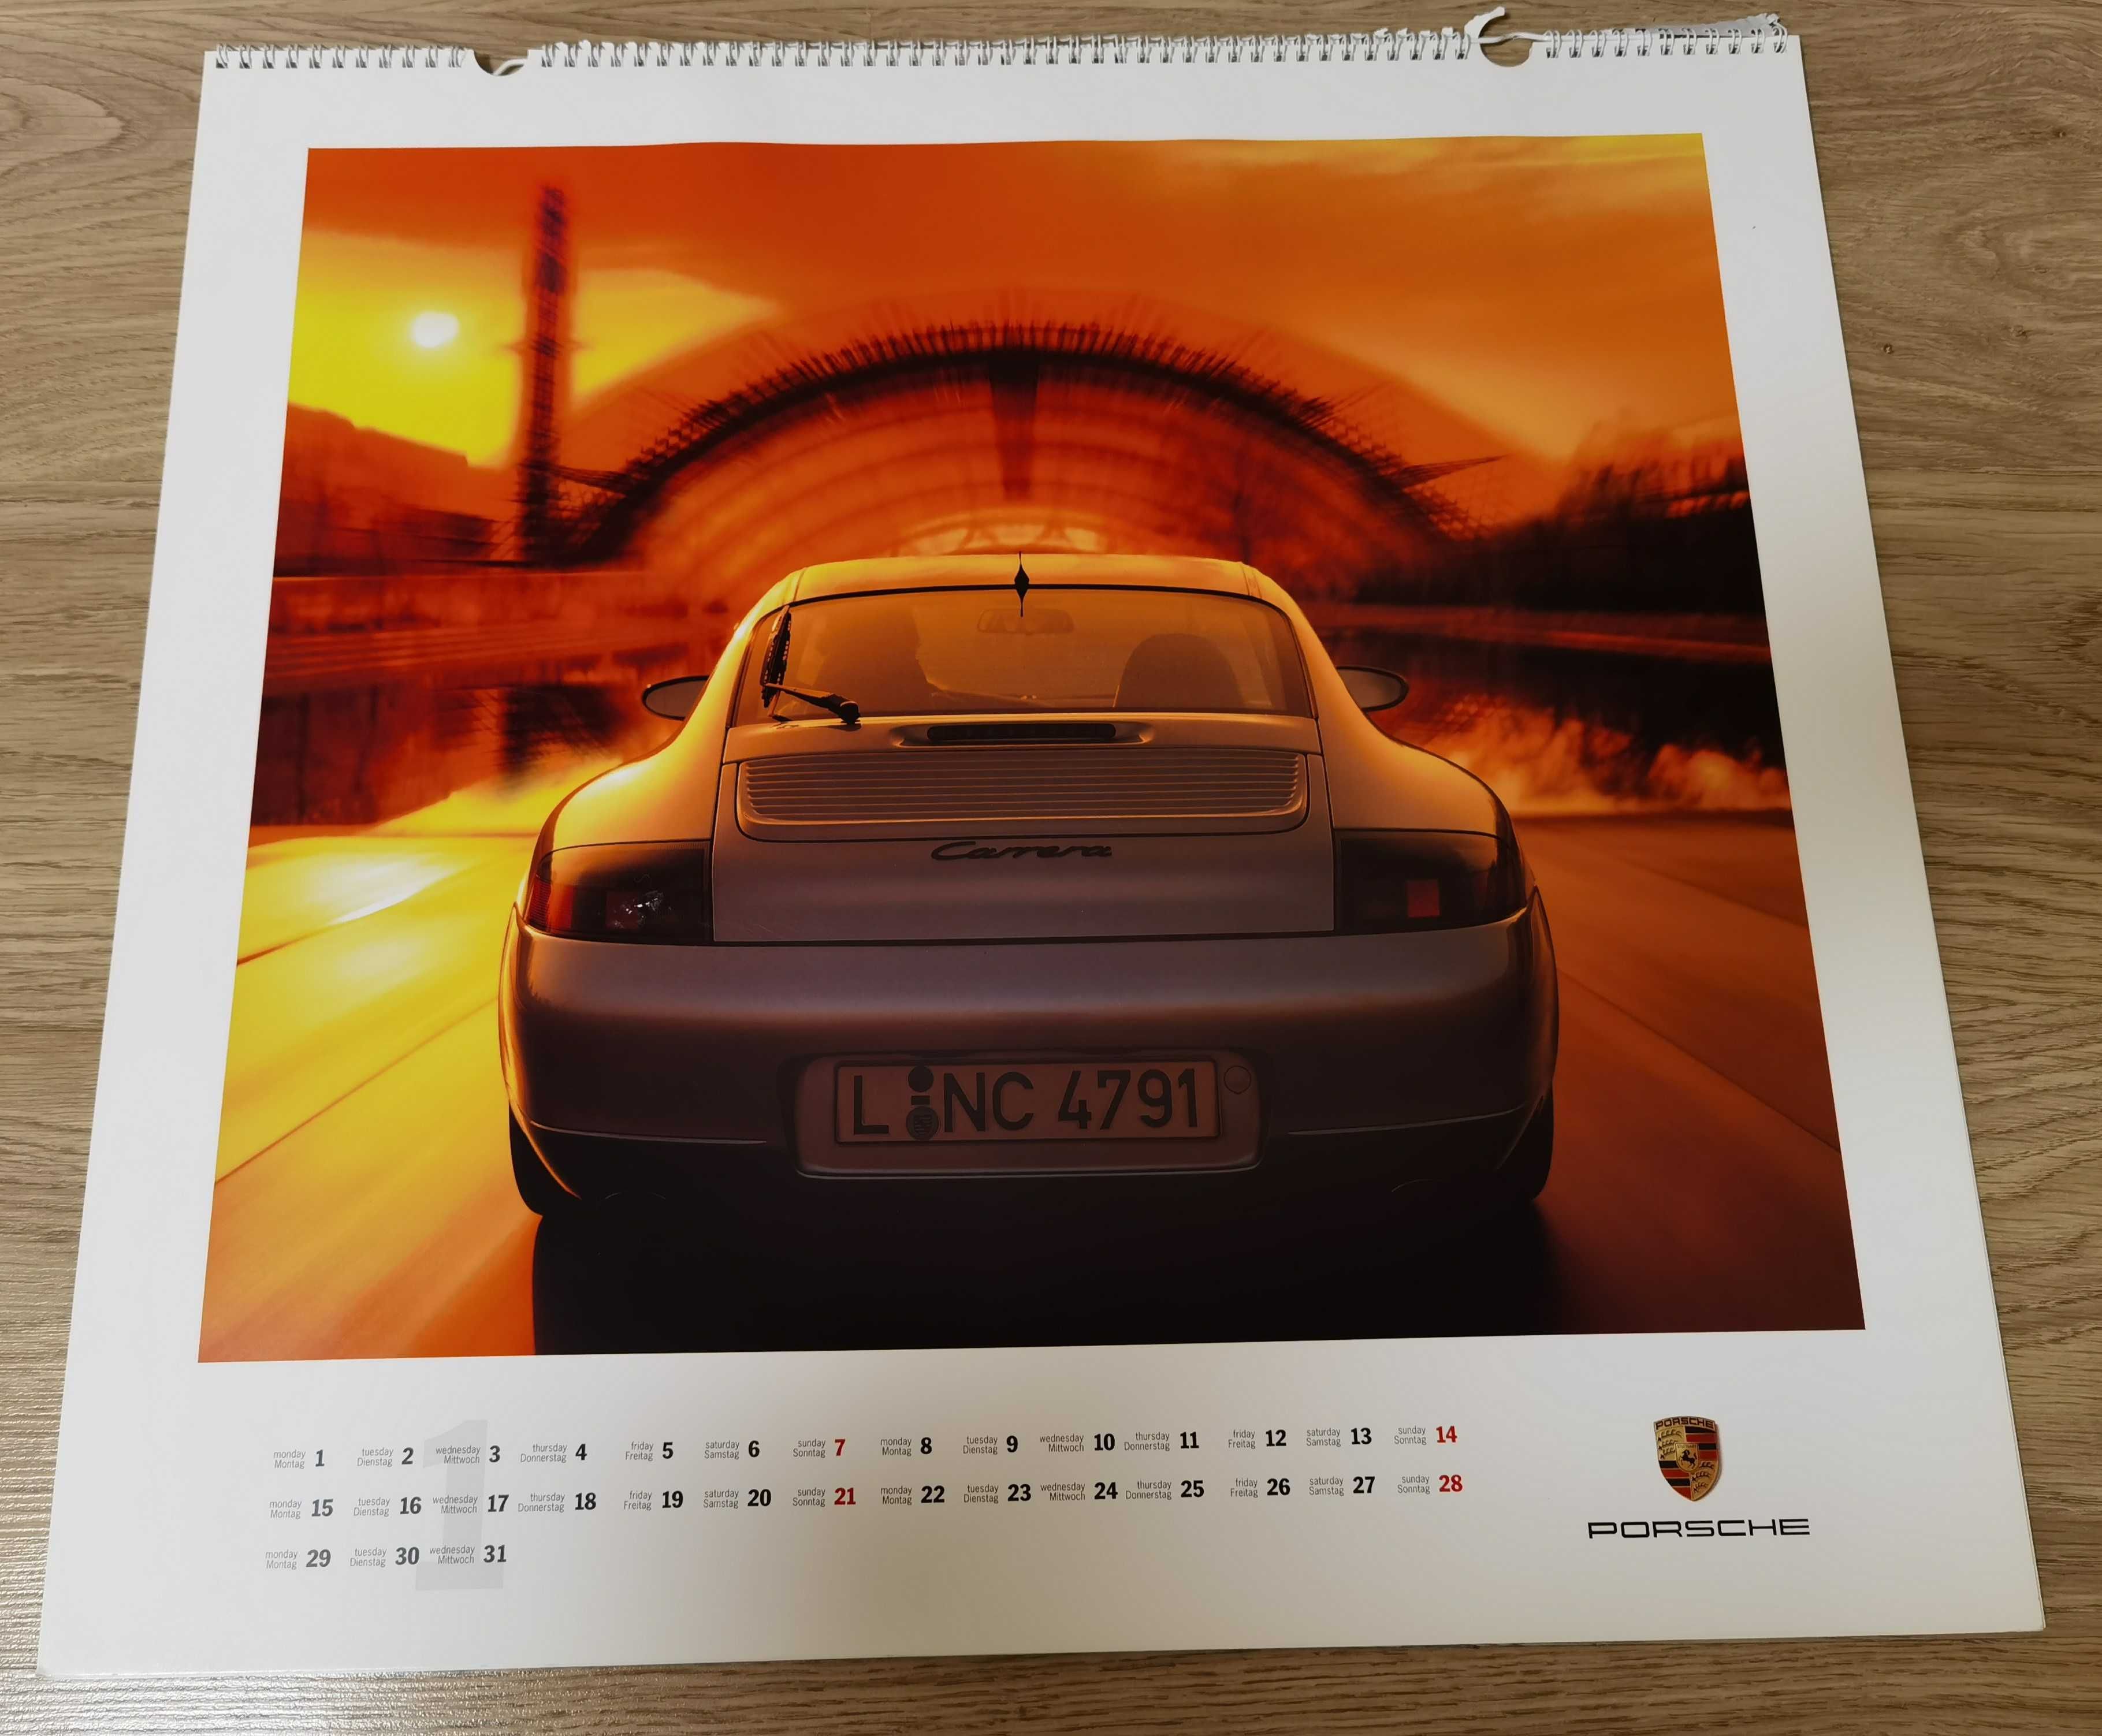 Porsche kalendarz 2005 powerd by Porsche